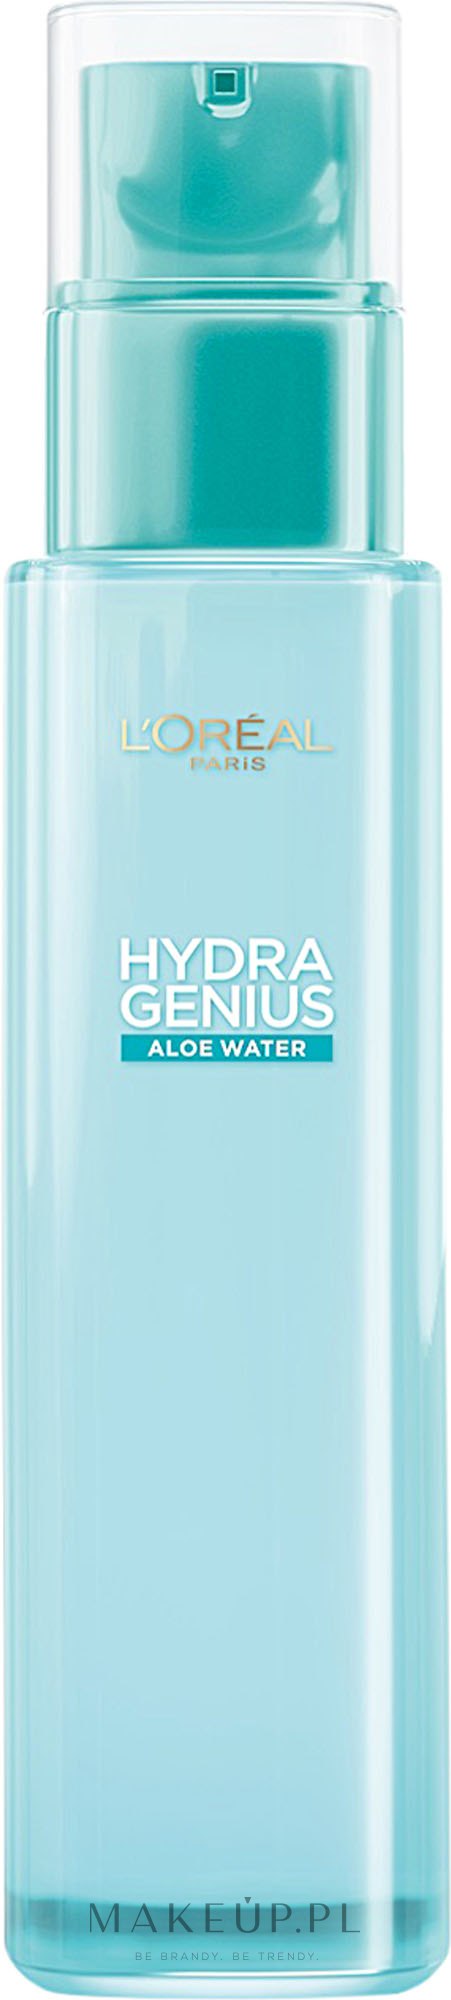 L'Oreal Paris Hydra Genius Aloe Water - Płynna pielęgnacja nawilżająca do skóry suchej i wrażliwej Woda aloesowa + kwas hialuronowy — Zdjęcie 70 ml